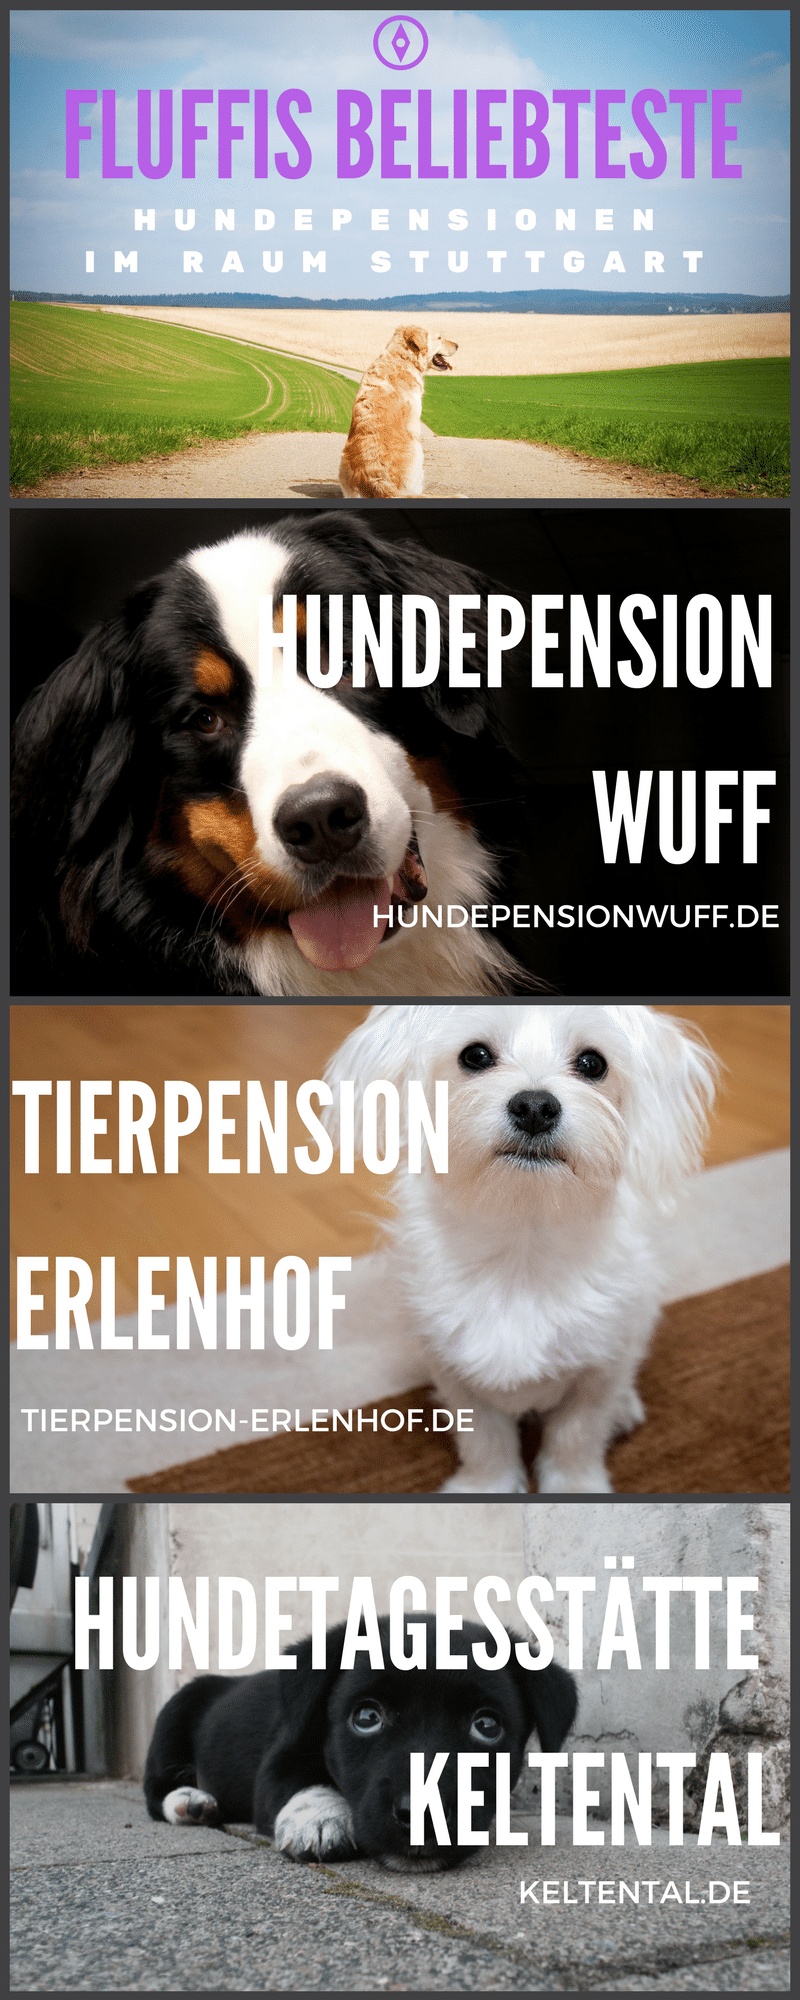 Diese Hundepensionen bekamten viele Stimmen in Fluffis Kategorie: Hundepension Stuttgart